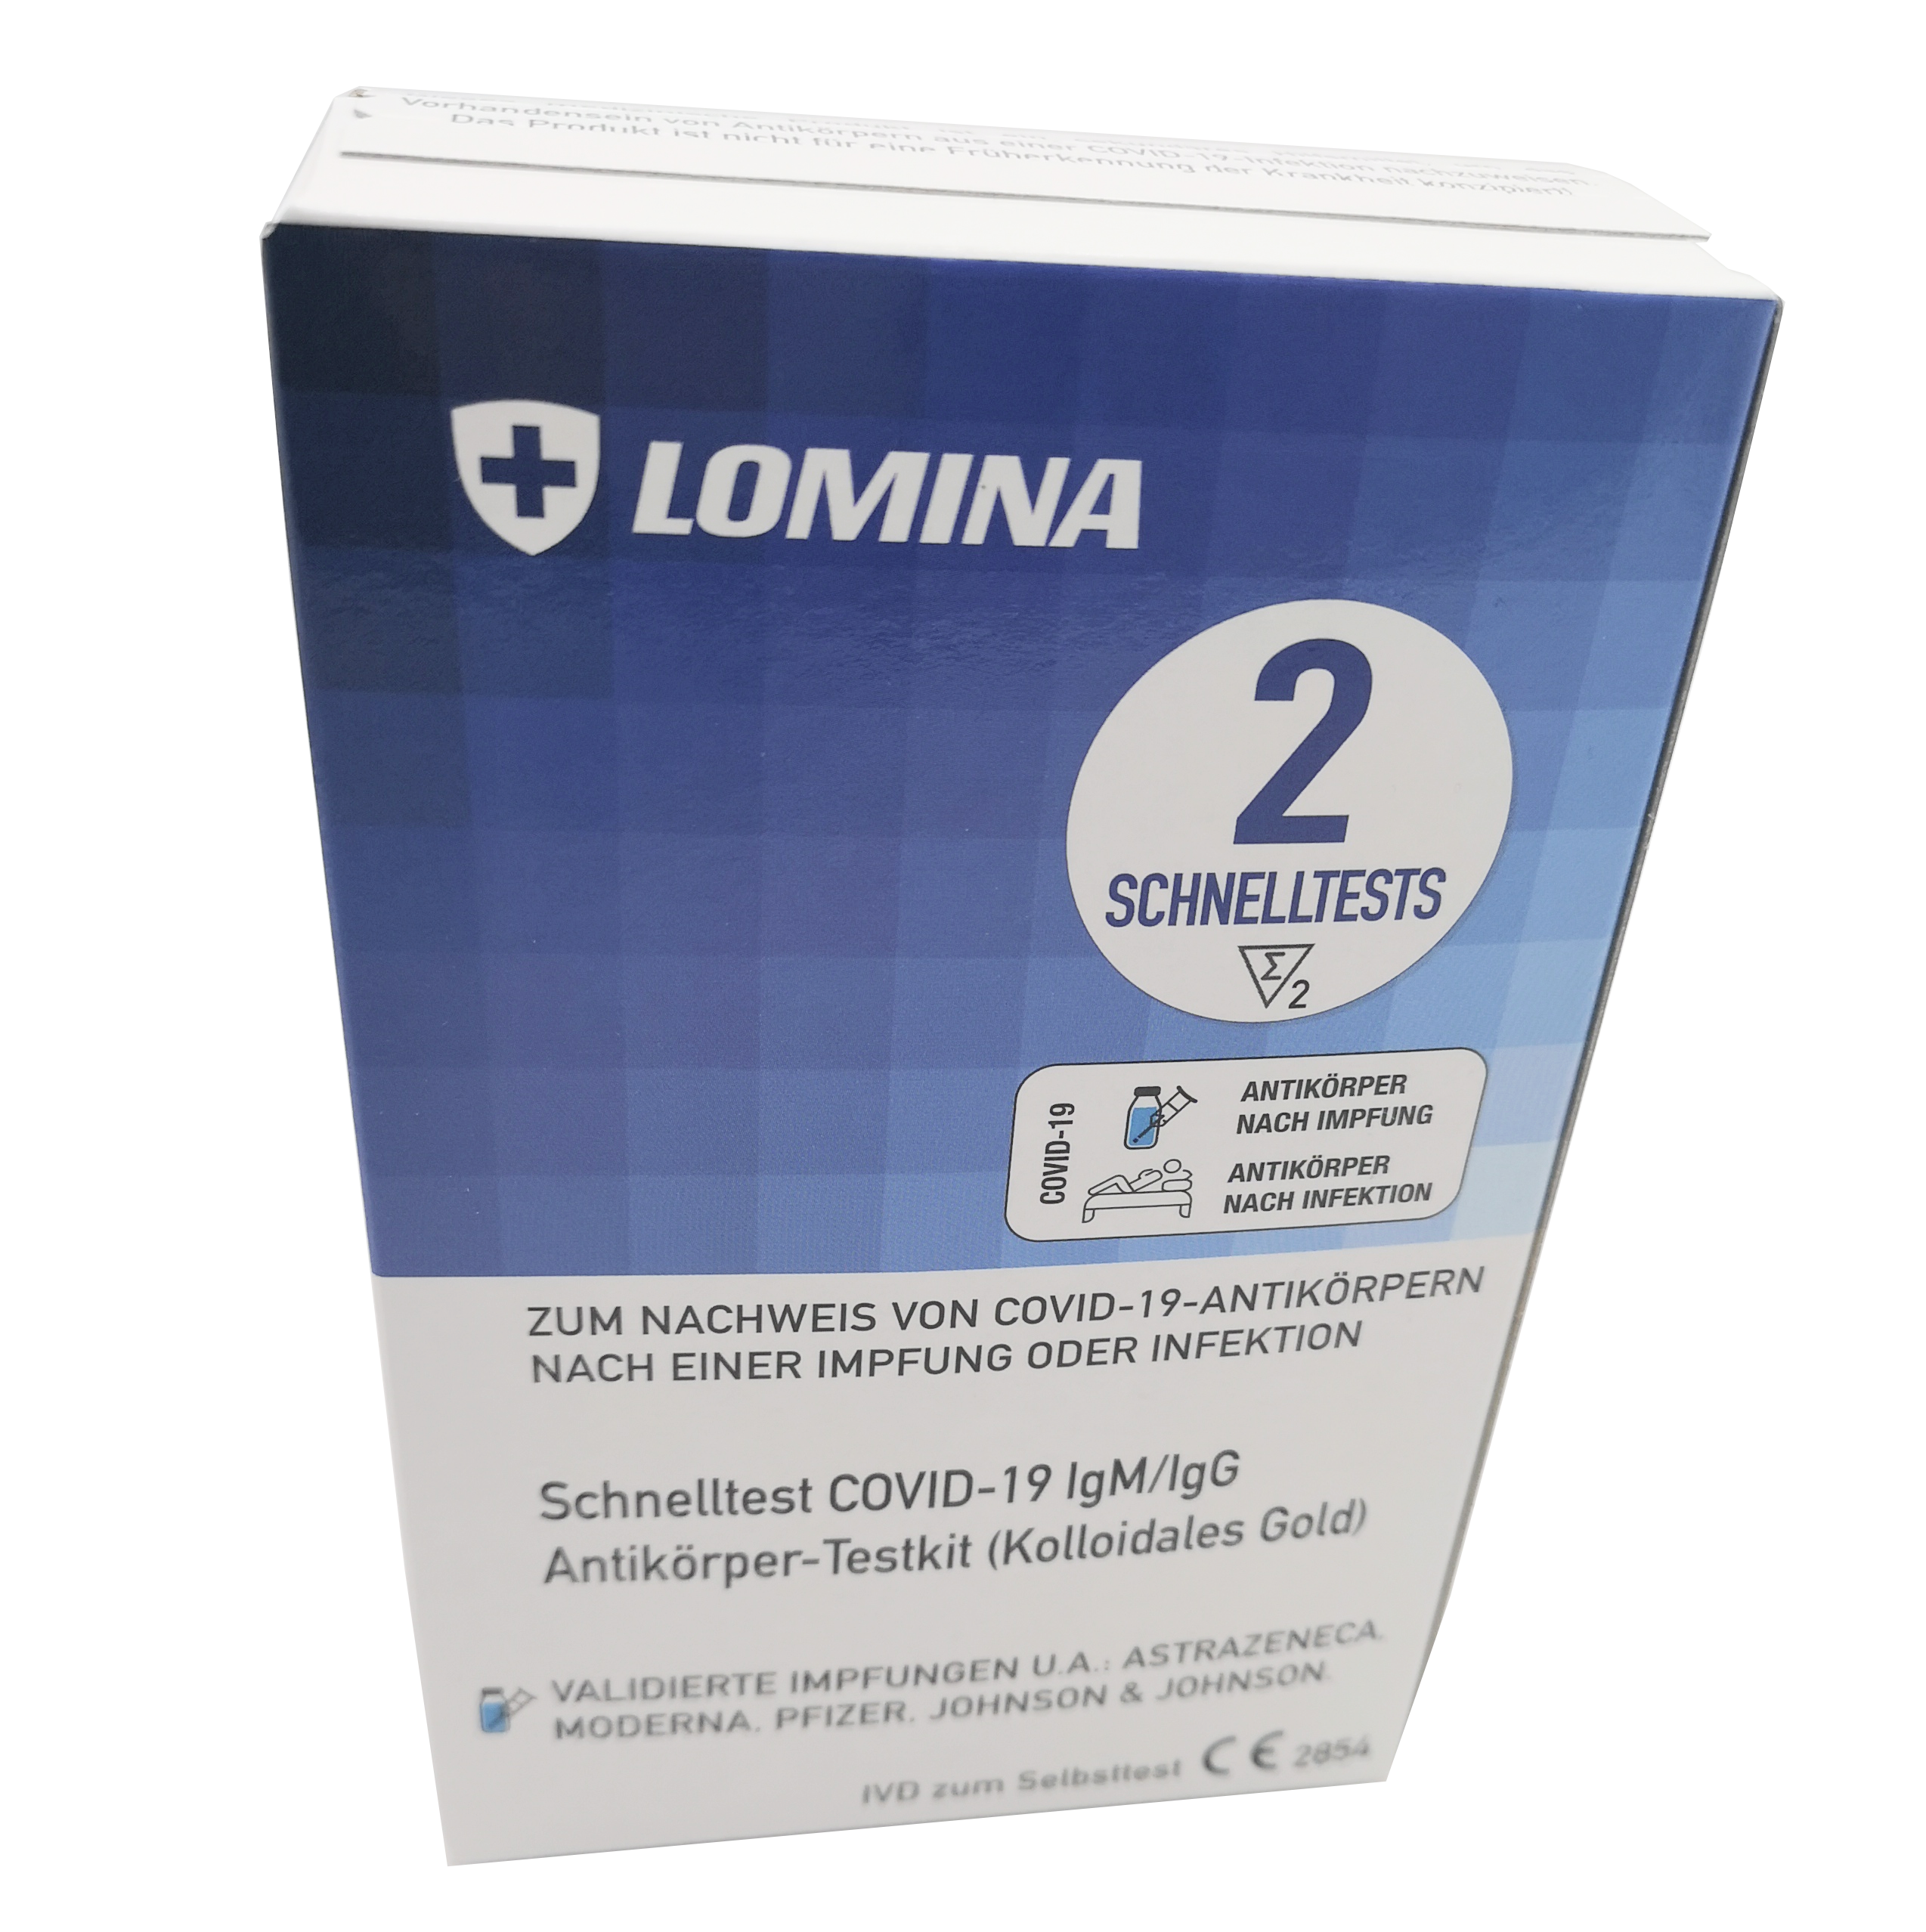 Lomina Antikörper Schnelltest LgM/LgG (Kolloidales Gold) 2er Packung